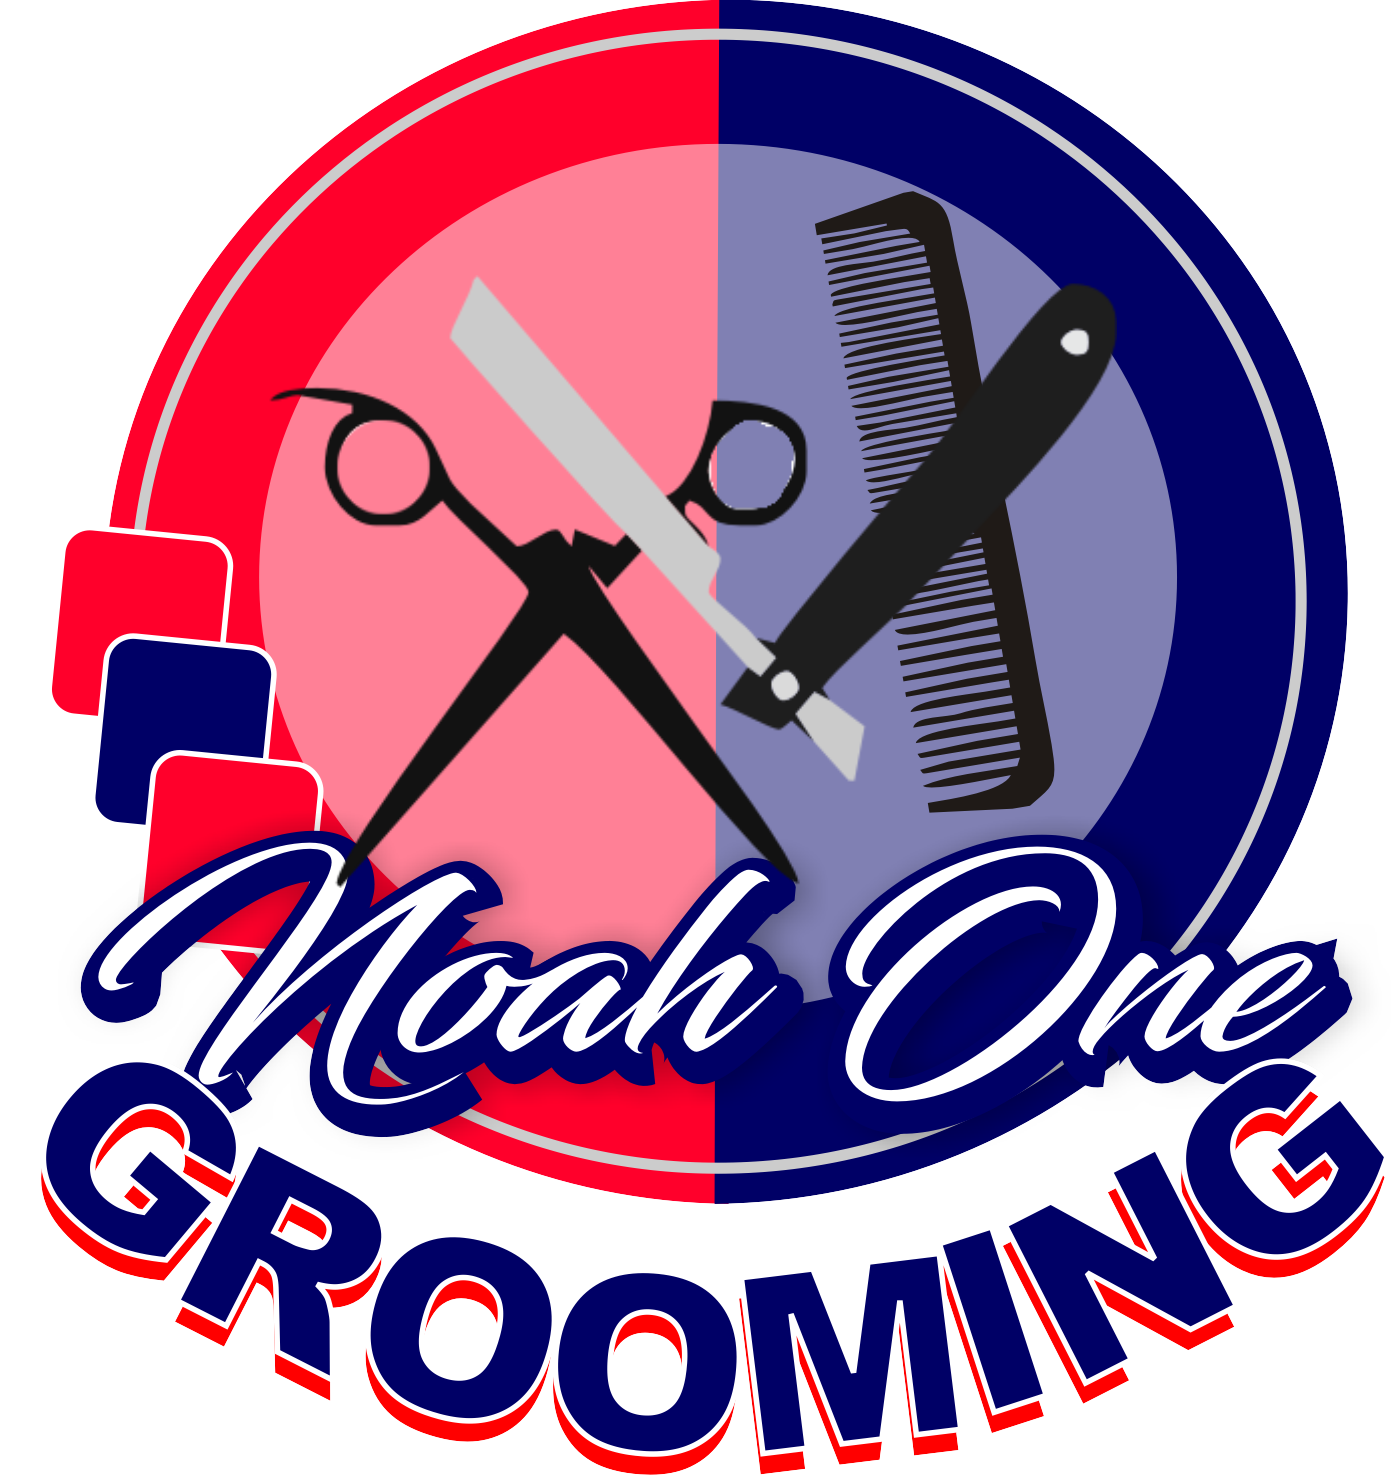 Noah One Grooming logo